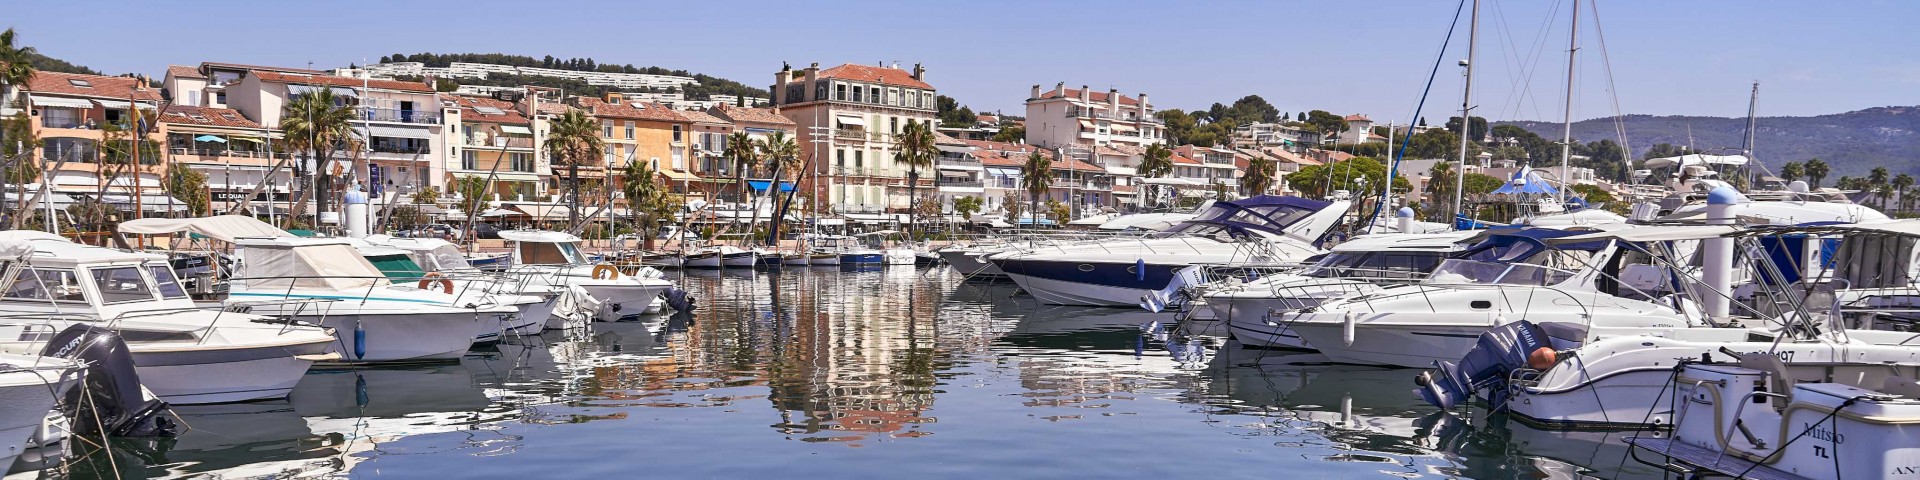 Harbour front in Bandol; Côte d’Azur Resort Bandol